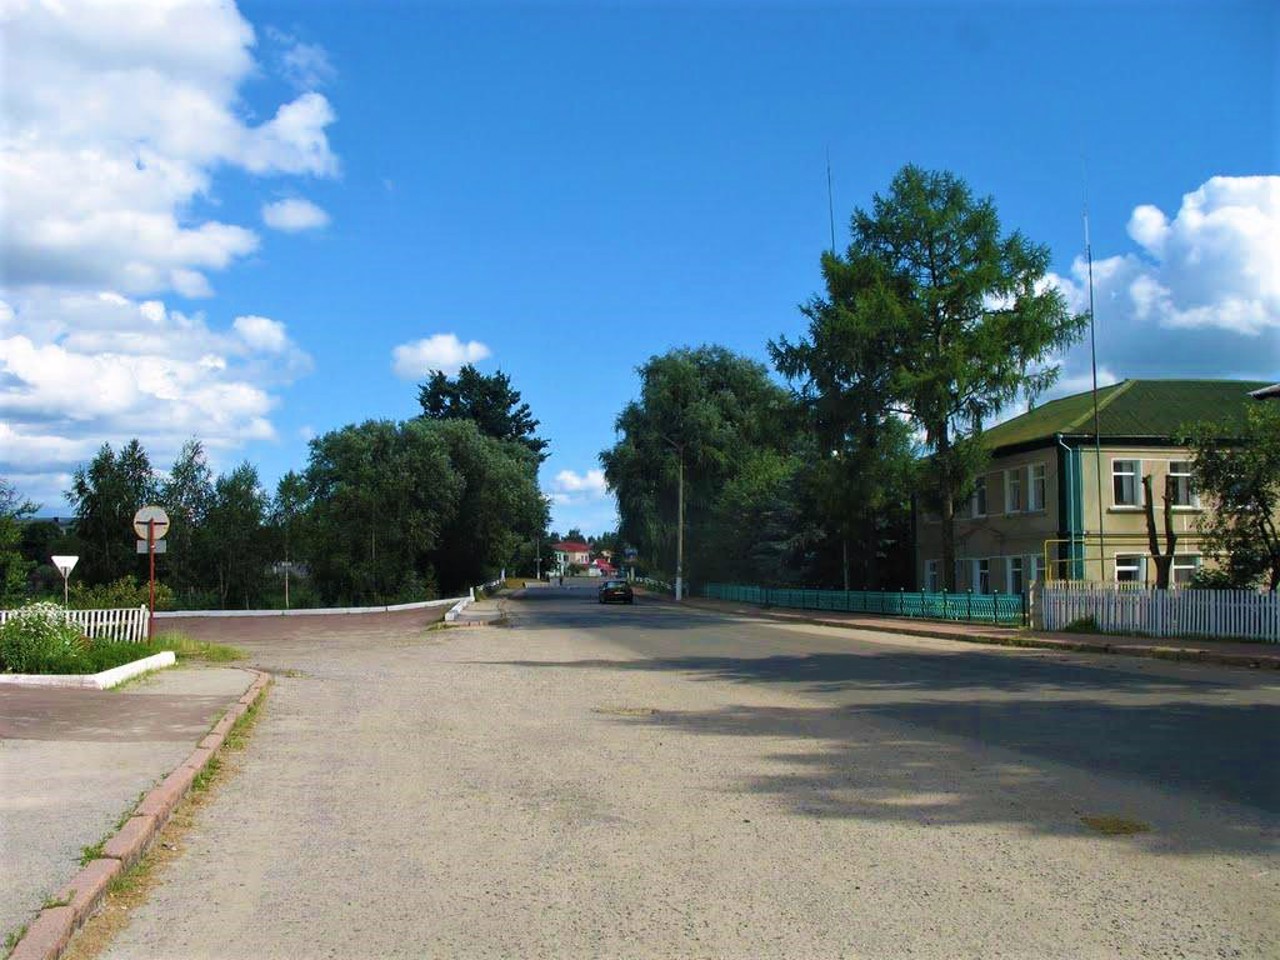 Yemilchyne village